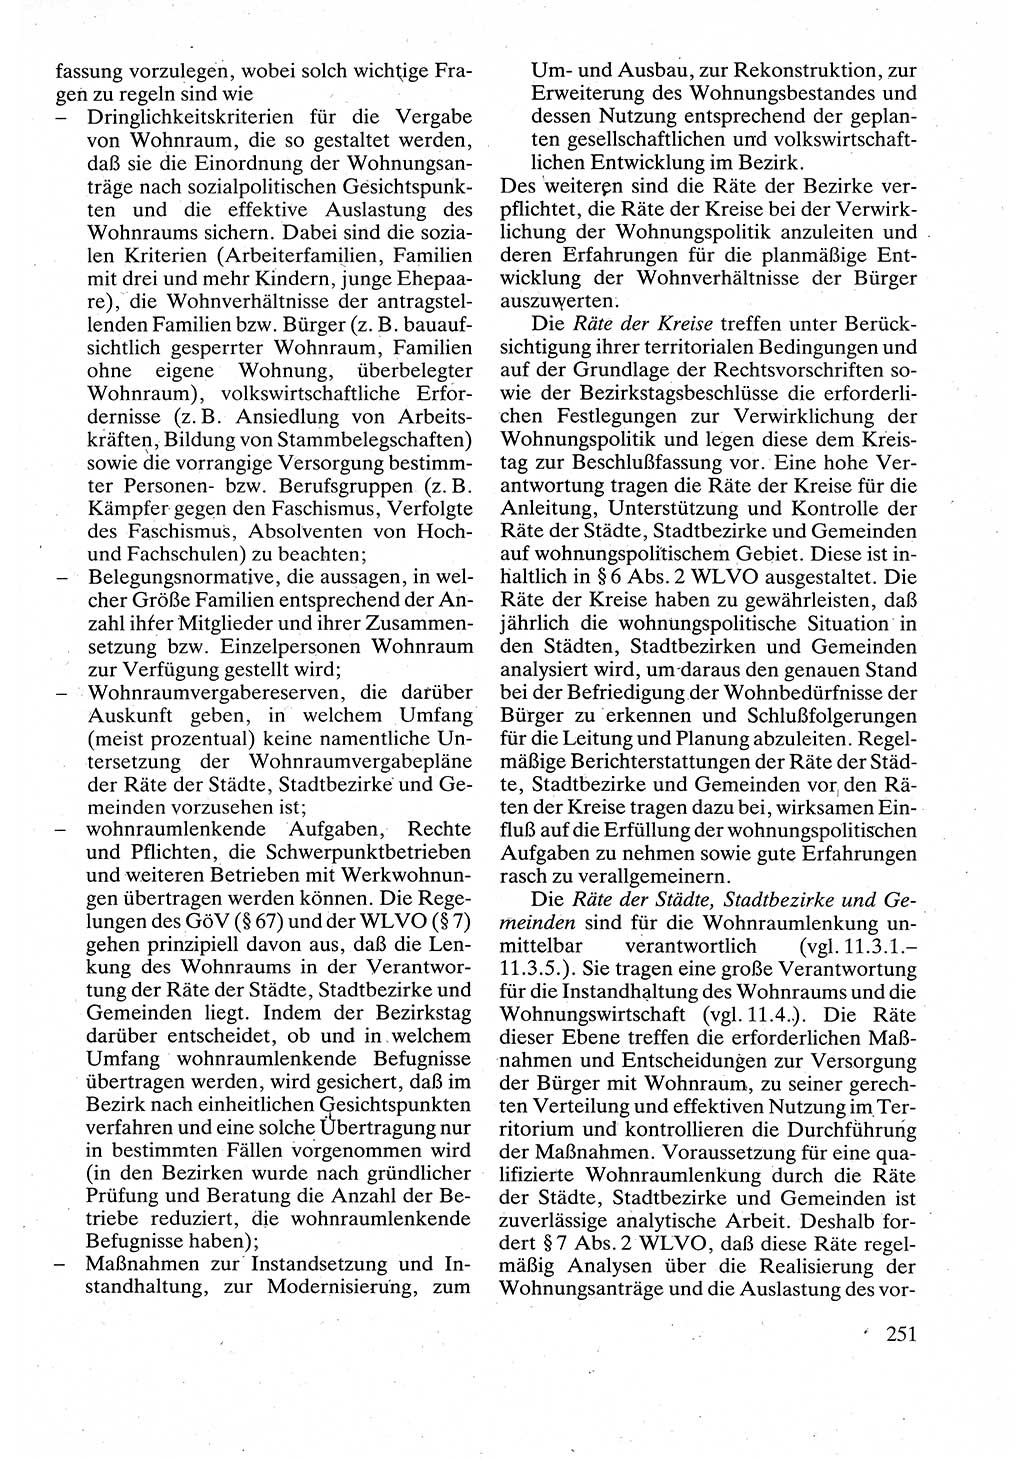 Verwaltungsrecht [Deutsche Demokratische Republik (DDR)], Lehrbuch 1988, Seite 251 (Verw.-R. DDR Lb. 1988, S. 251)